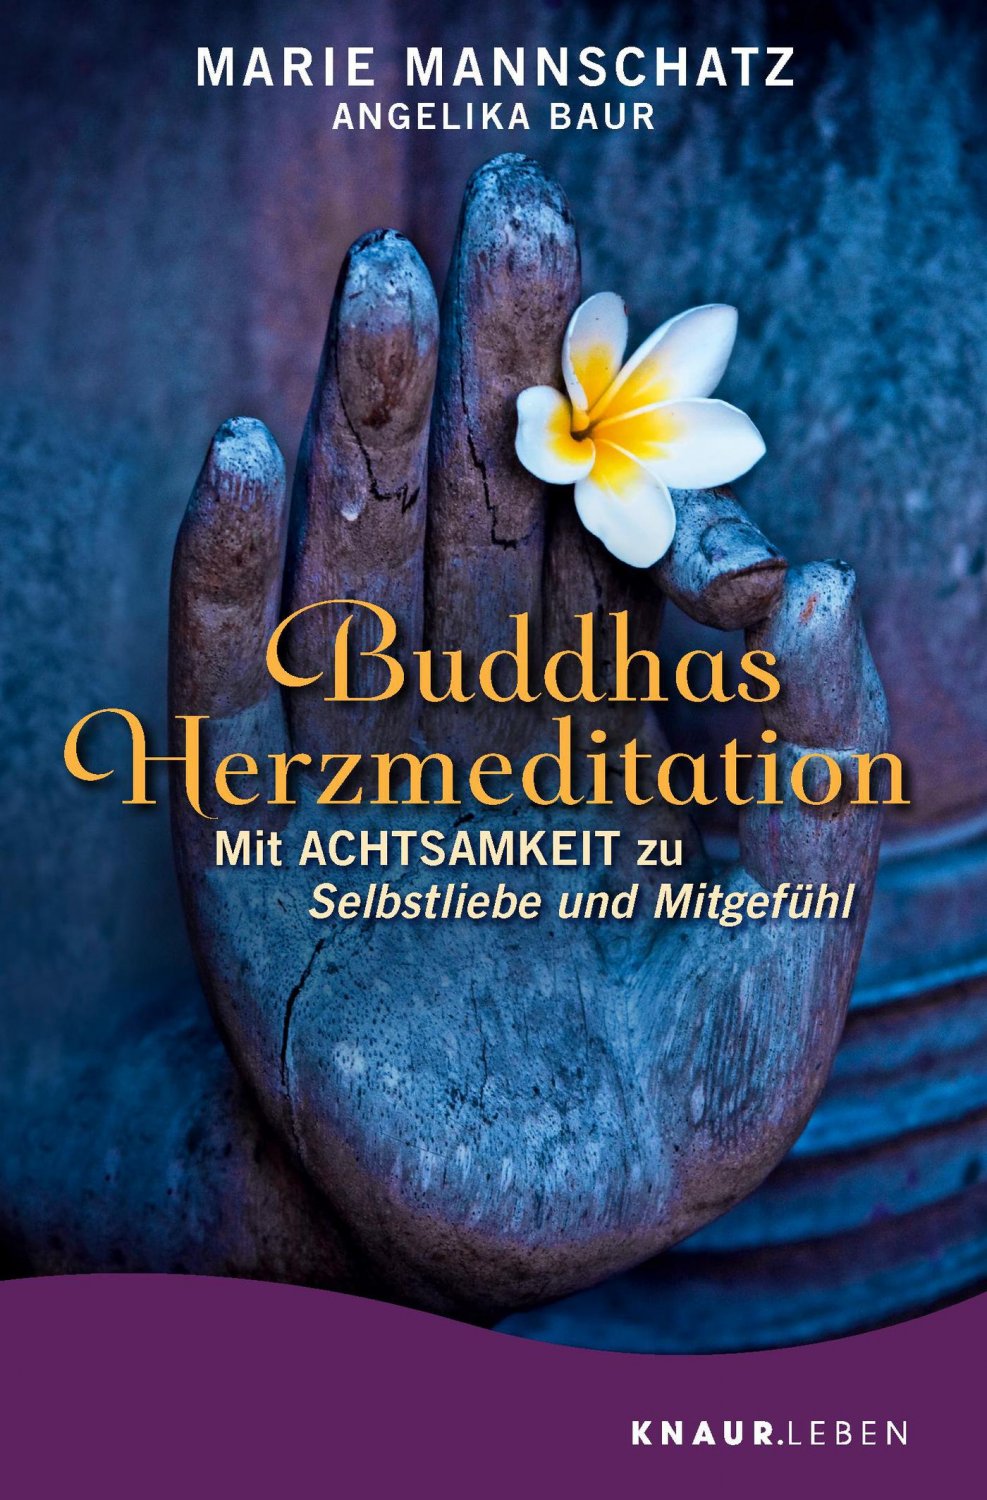 Buddhas Herzmeditation Mit Achtsamkeit zu Selbstliebe und Mitgefühl Marie